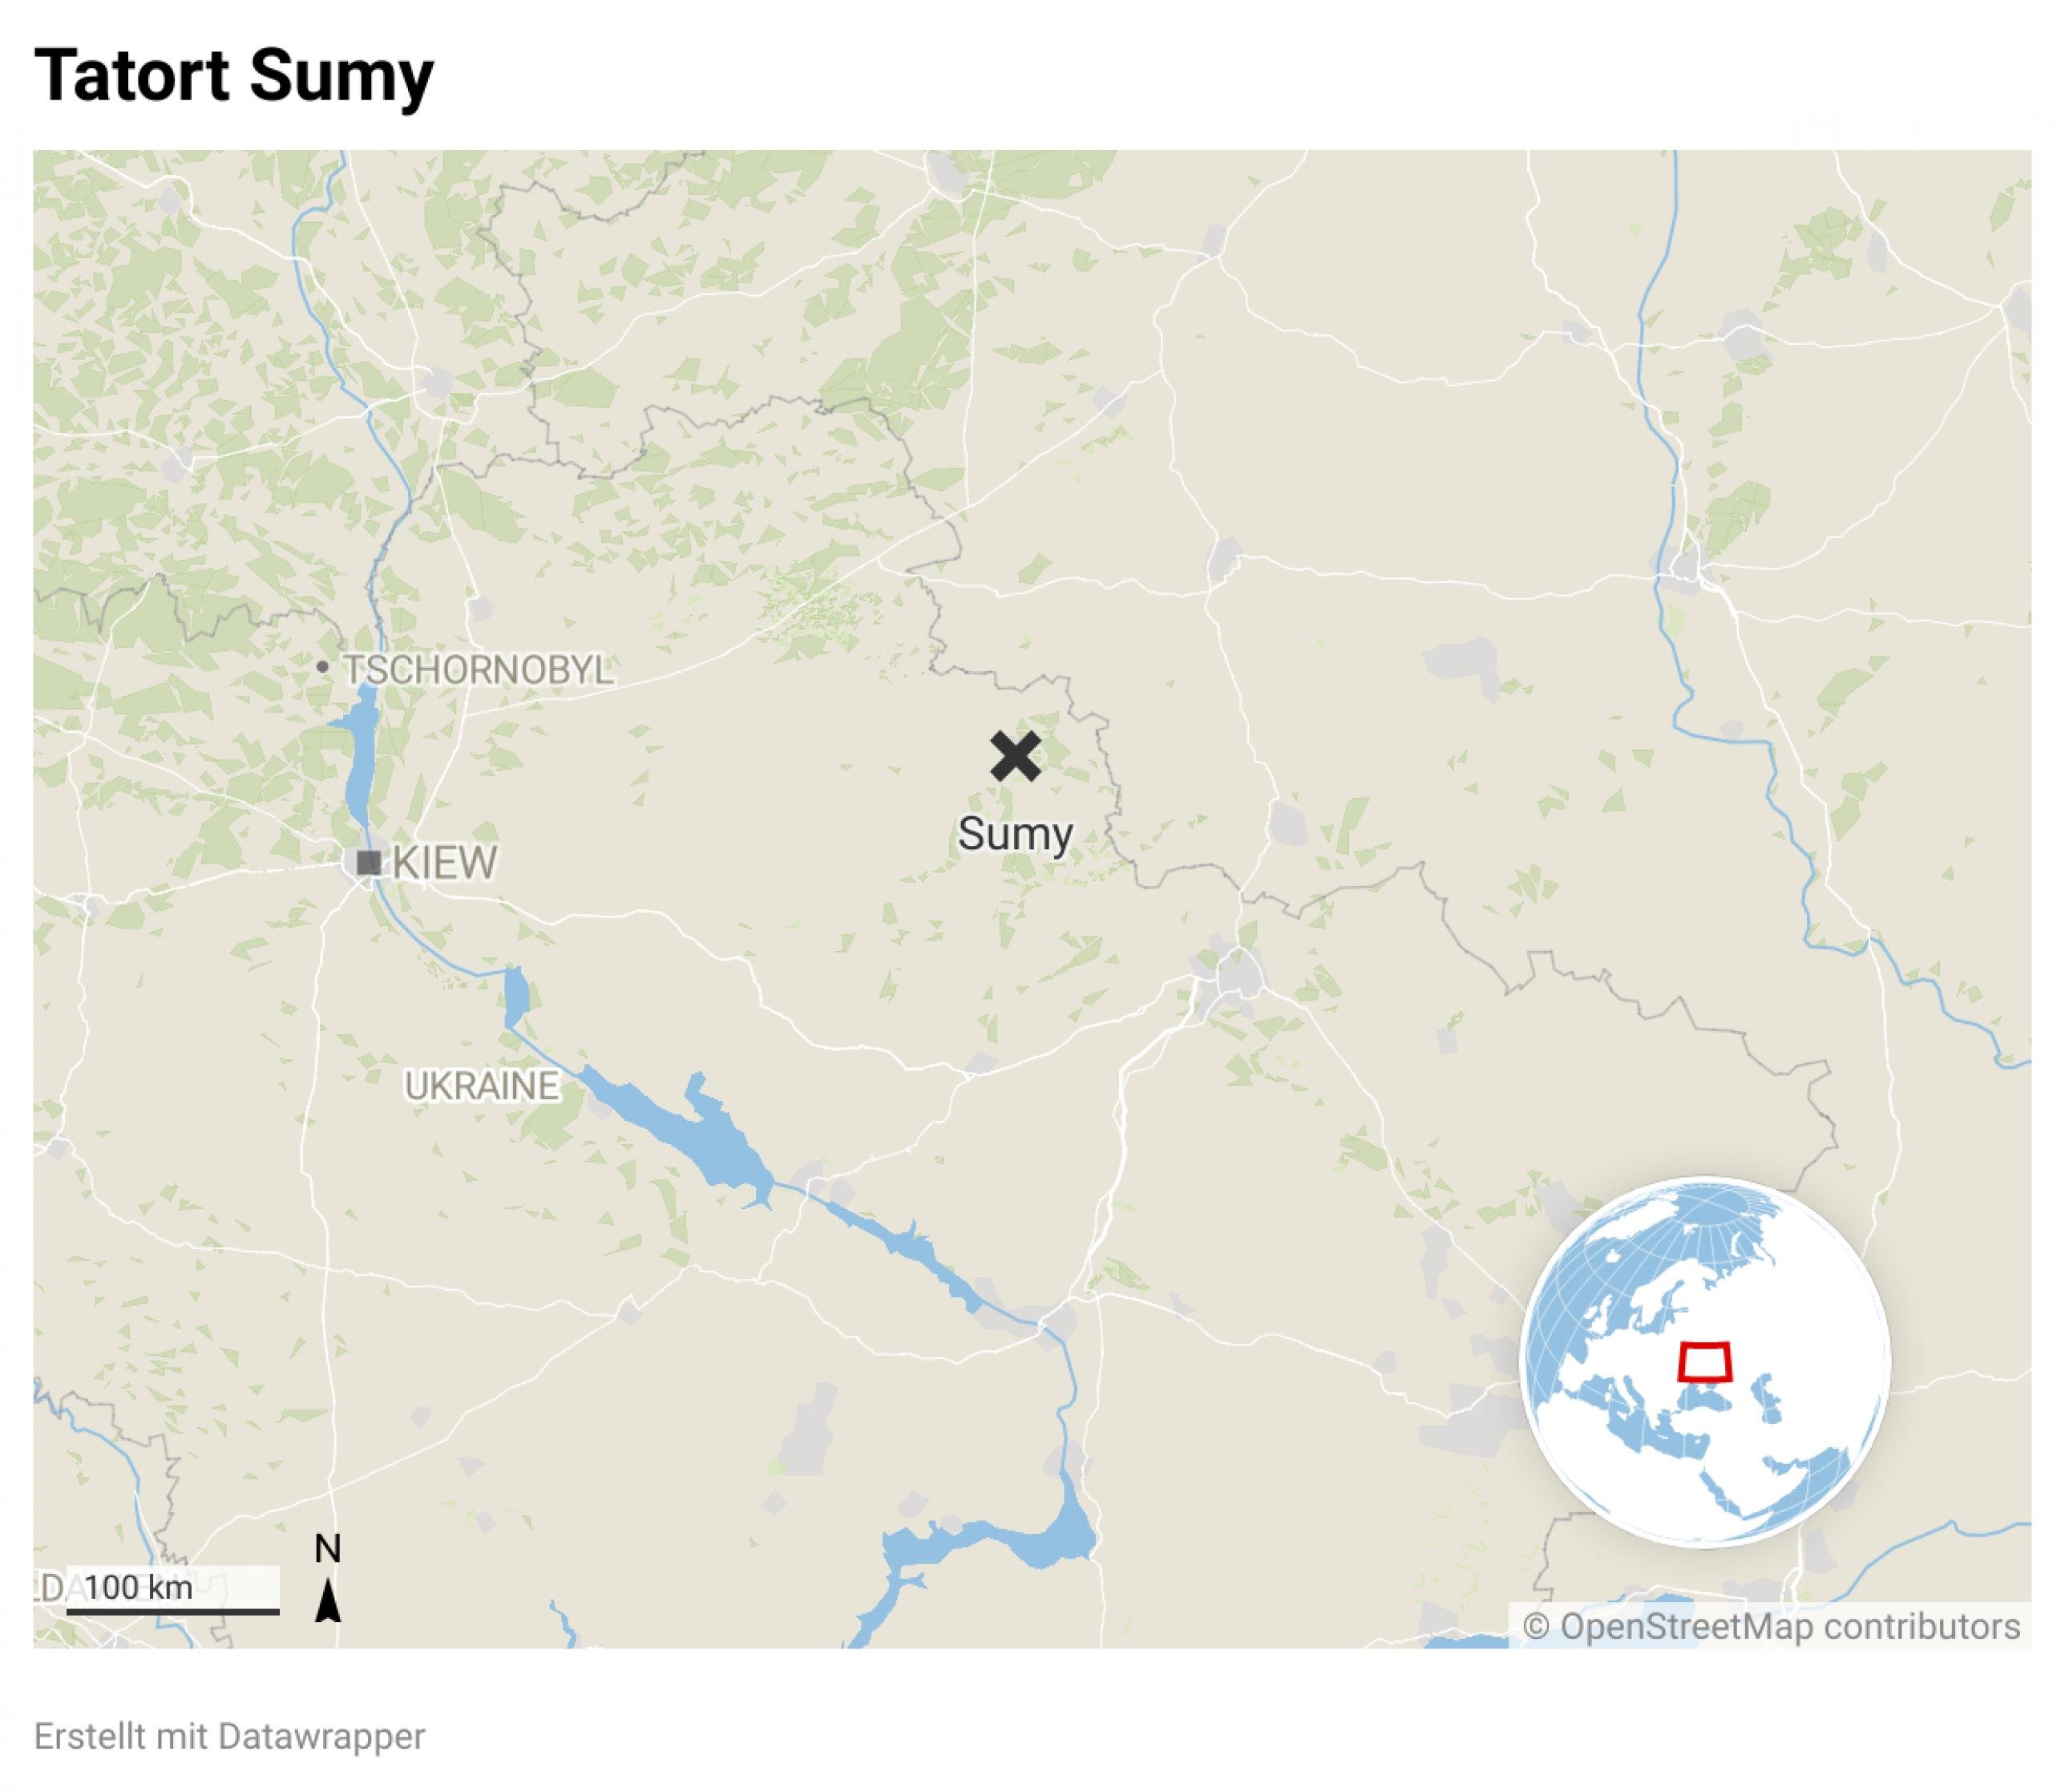 Landkarte mit der Ortschaft Sumy östlich von Kiew nahe der russischen Grenze